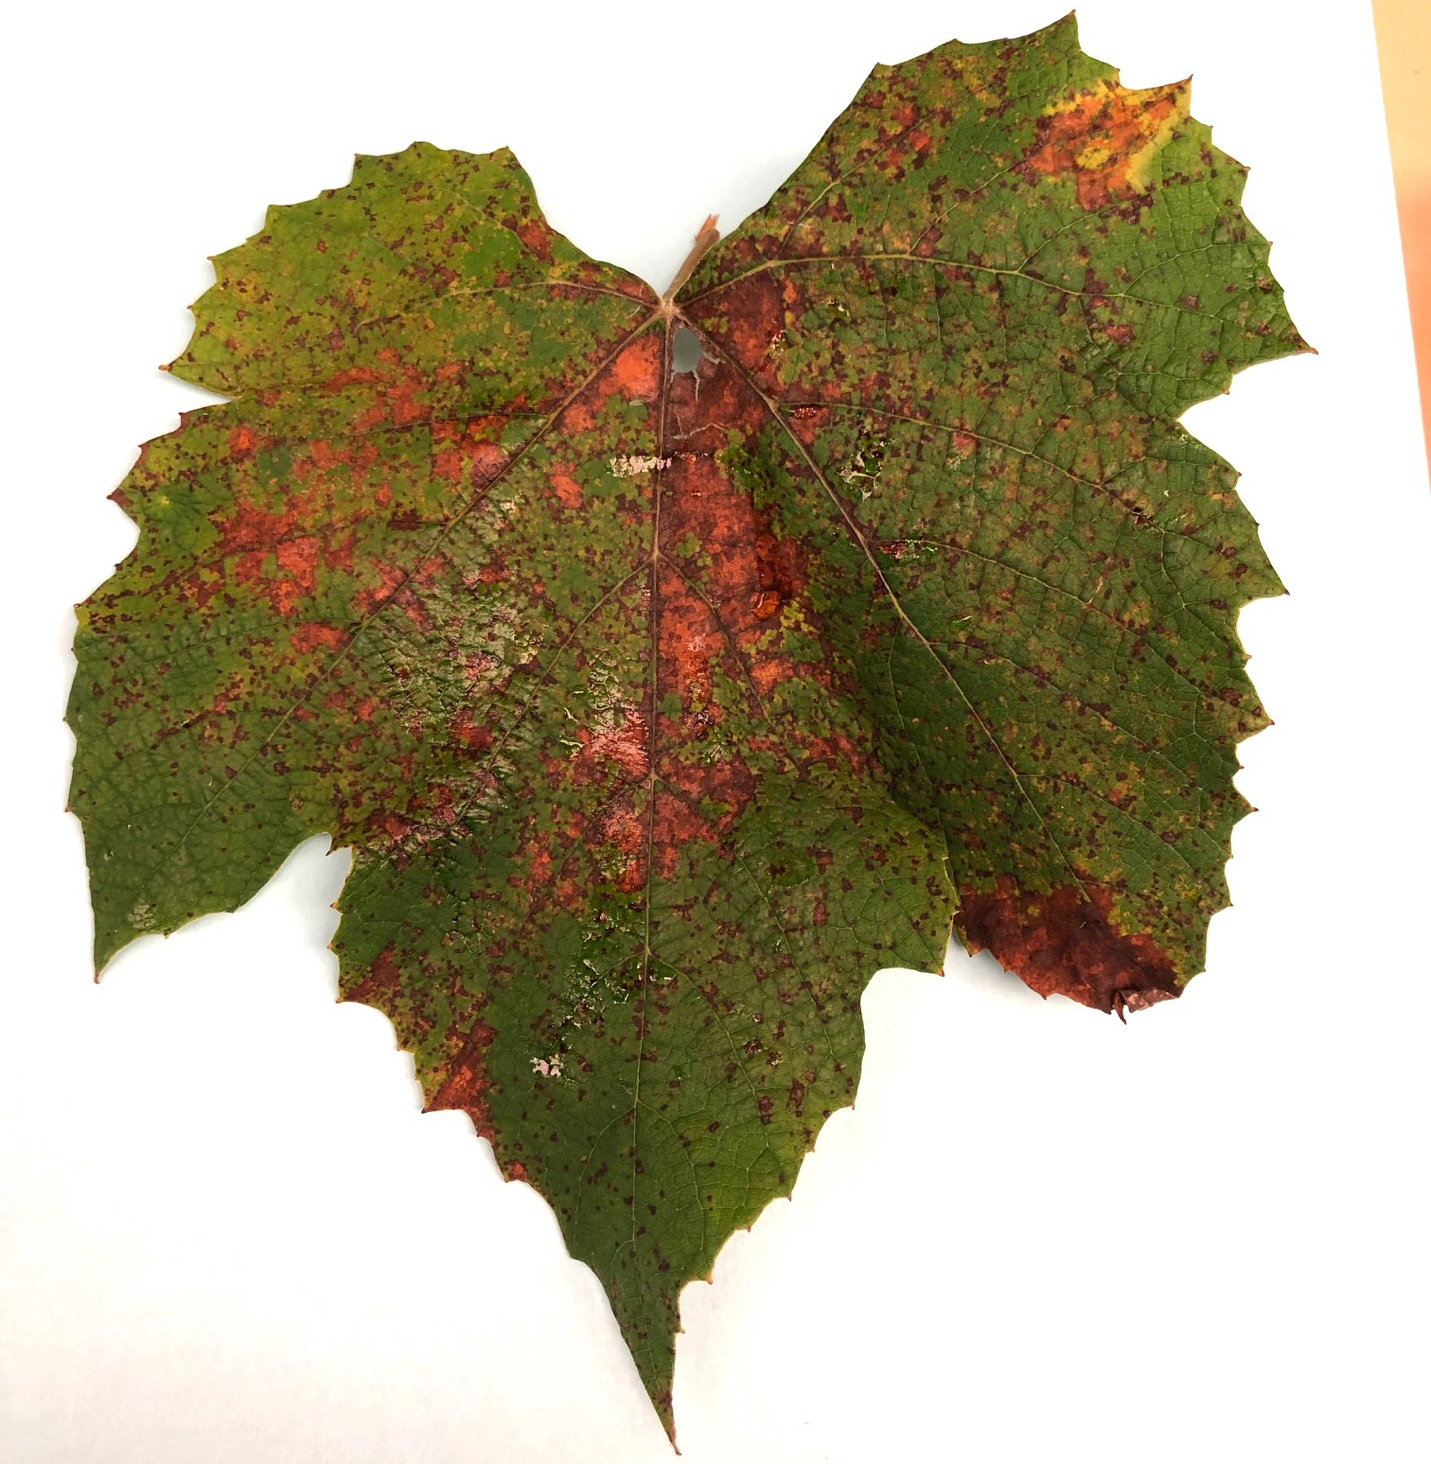 Downy mildew on Niagara grape leaf